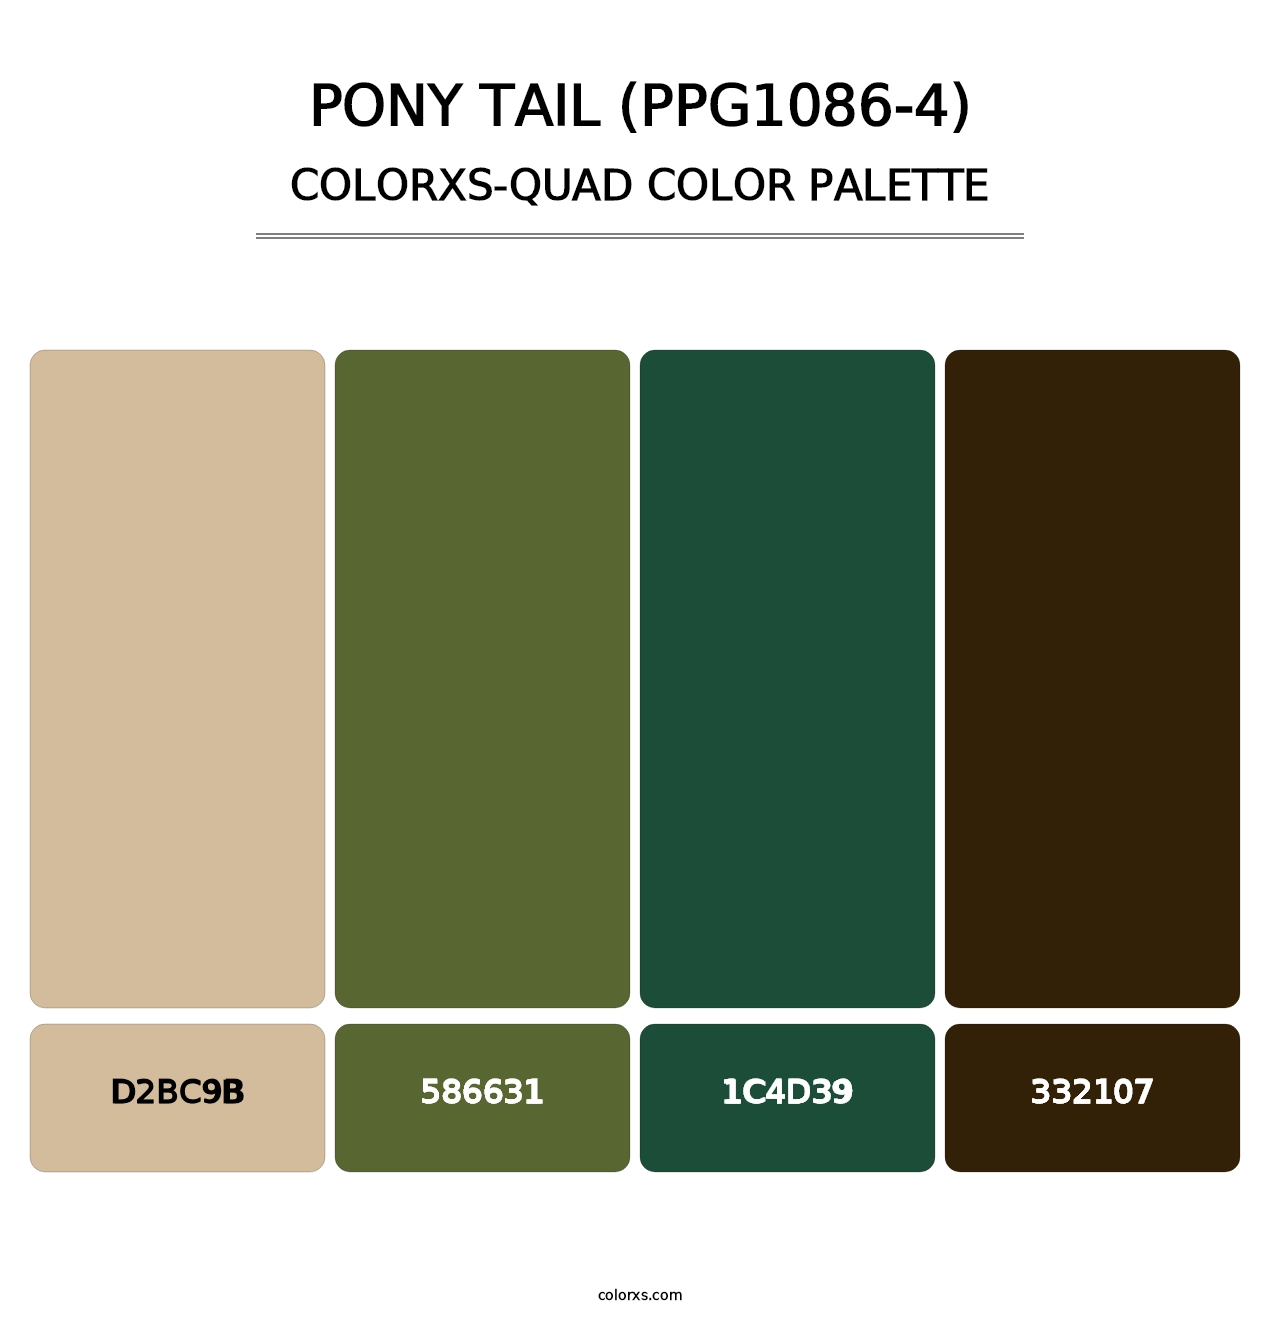 Pony Tail (PPG1086-4) - Colorxs Quad Palette